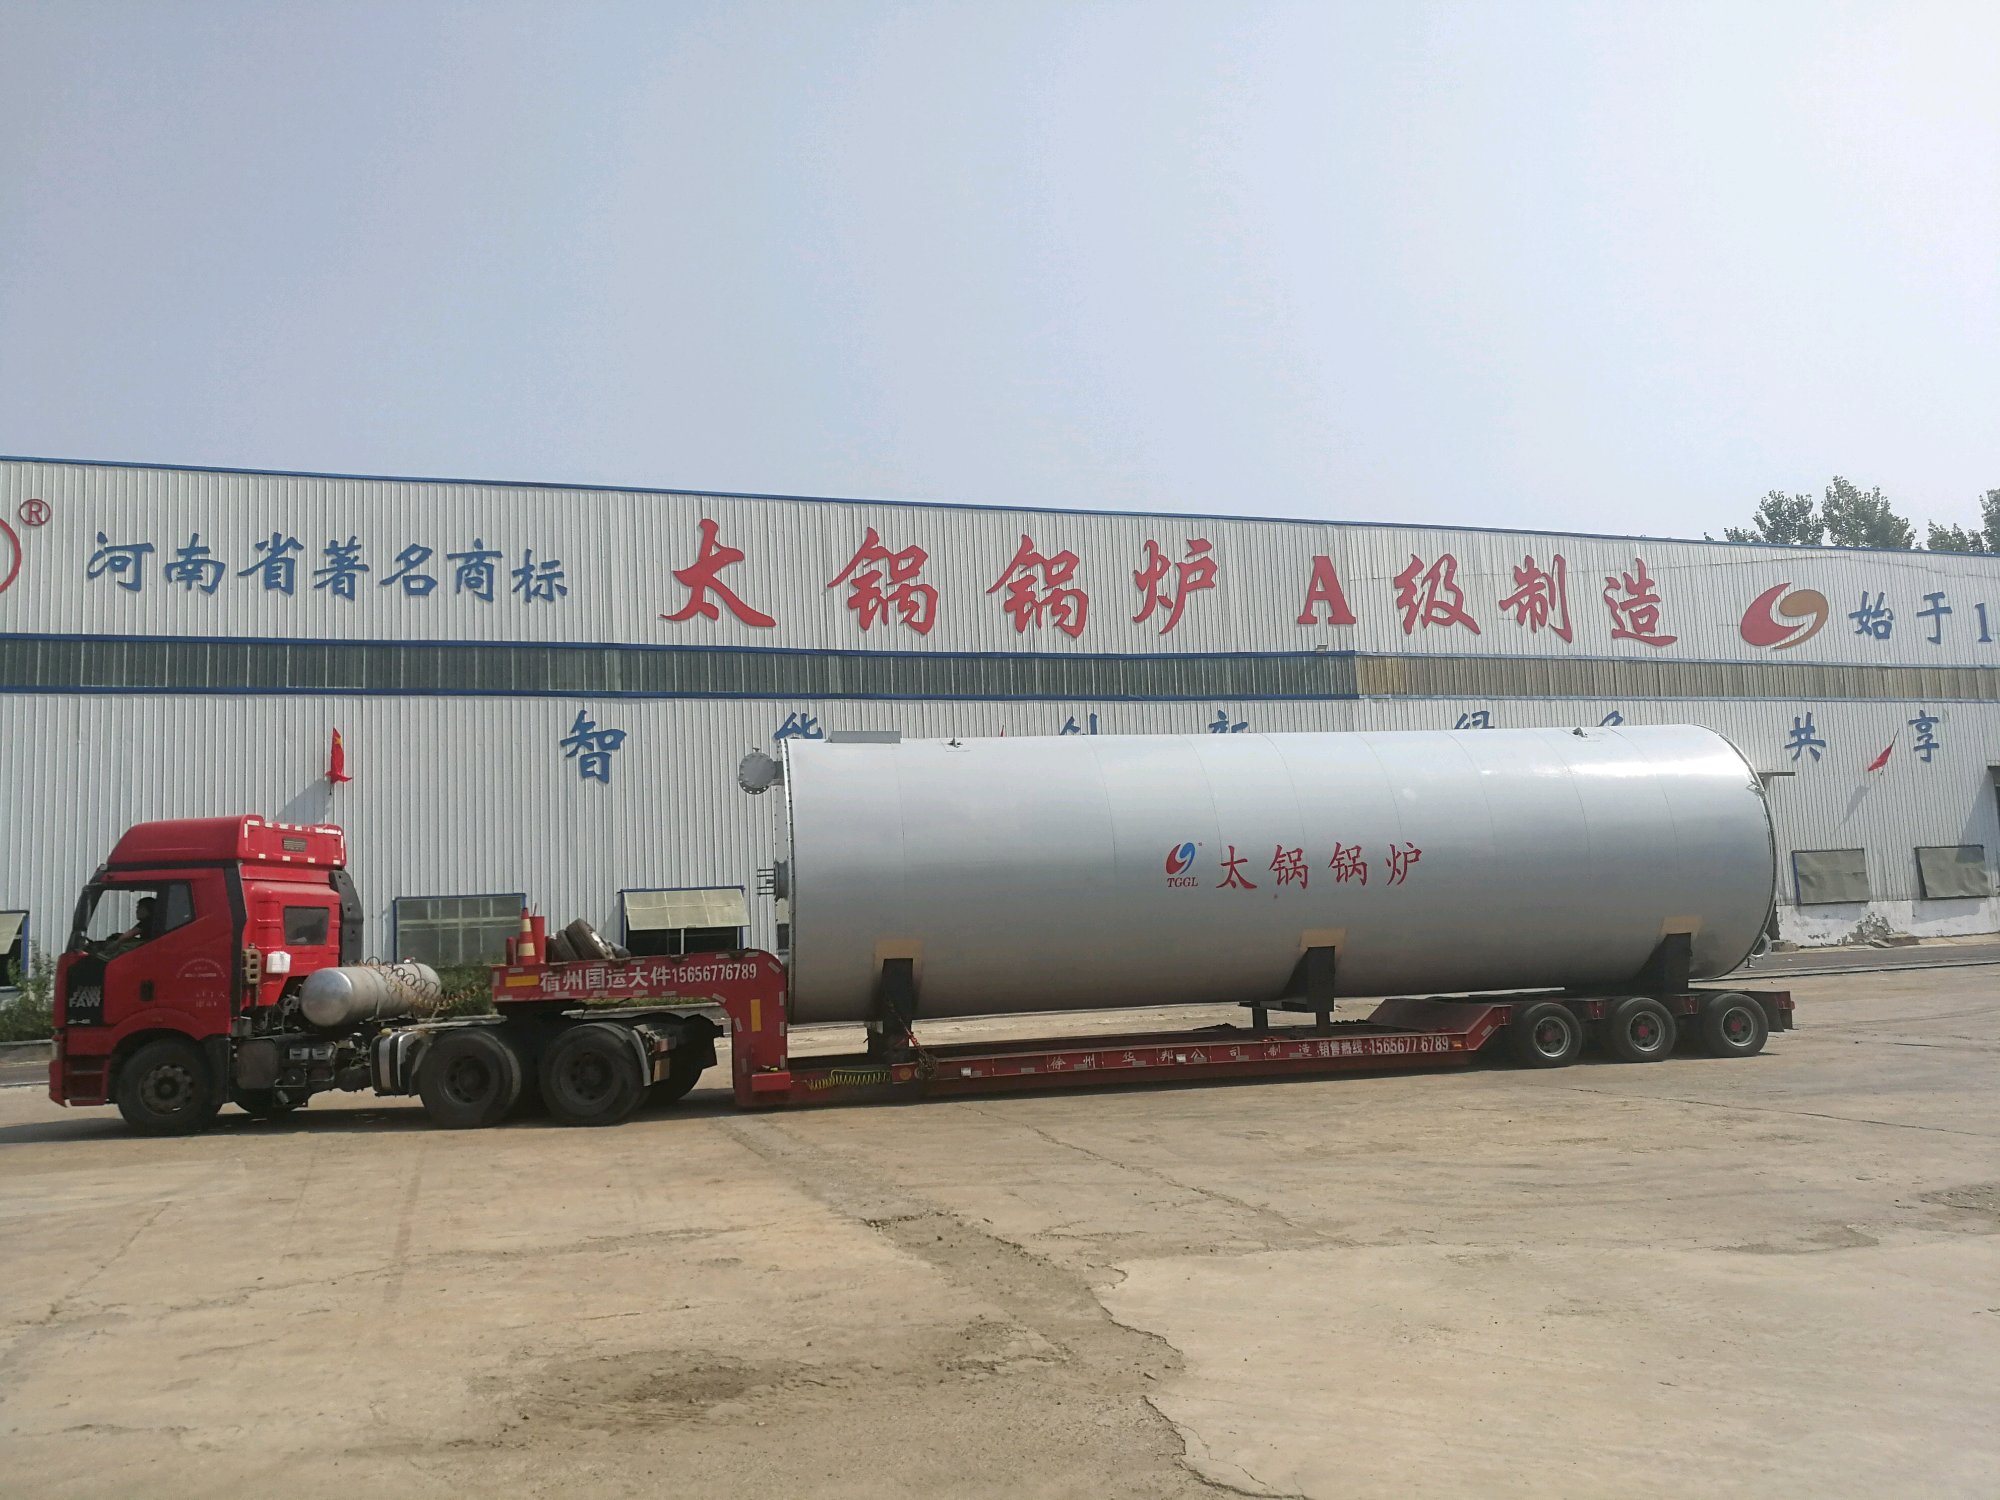 藁城太锅锅炉制造有限公司燃气锅炉和导热油炉发货中